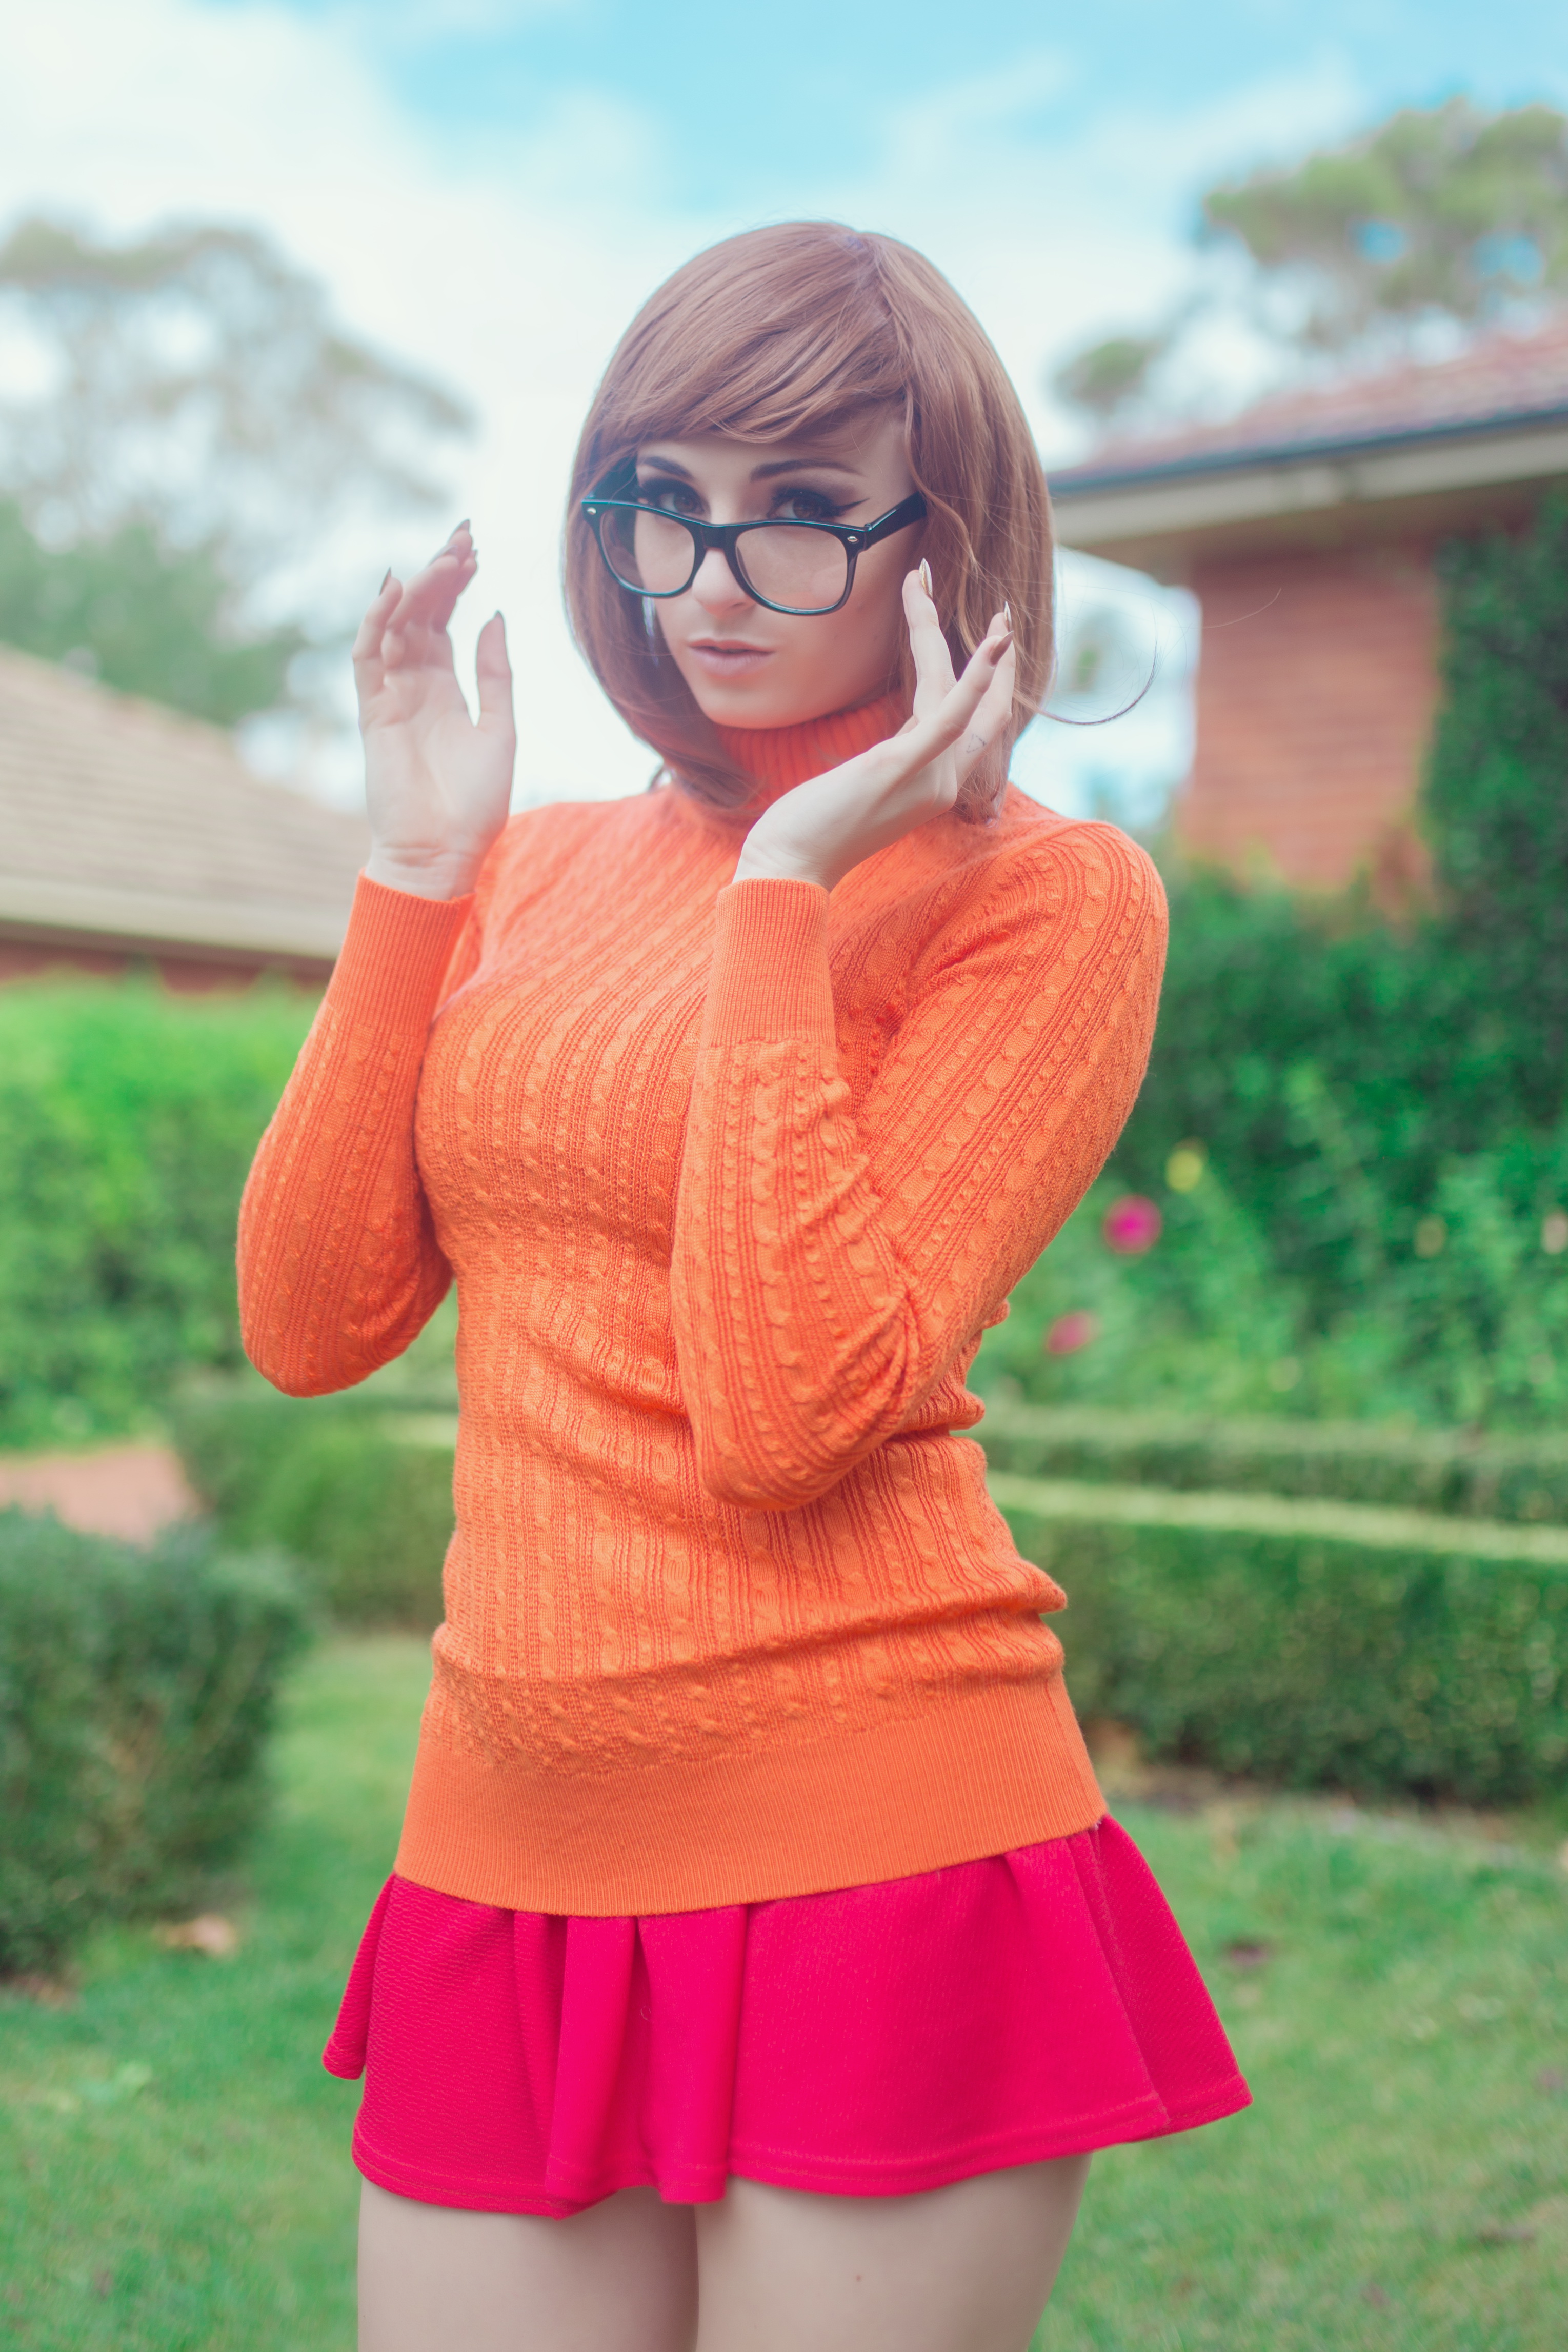 People 3058x4587 Kayla Erin women model women outdoors cosplay Scooby-Doo Velma Dinkley women with glasses turtlenecks sweater miniskirt